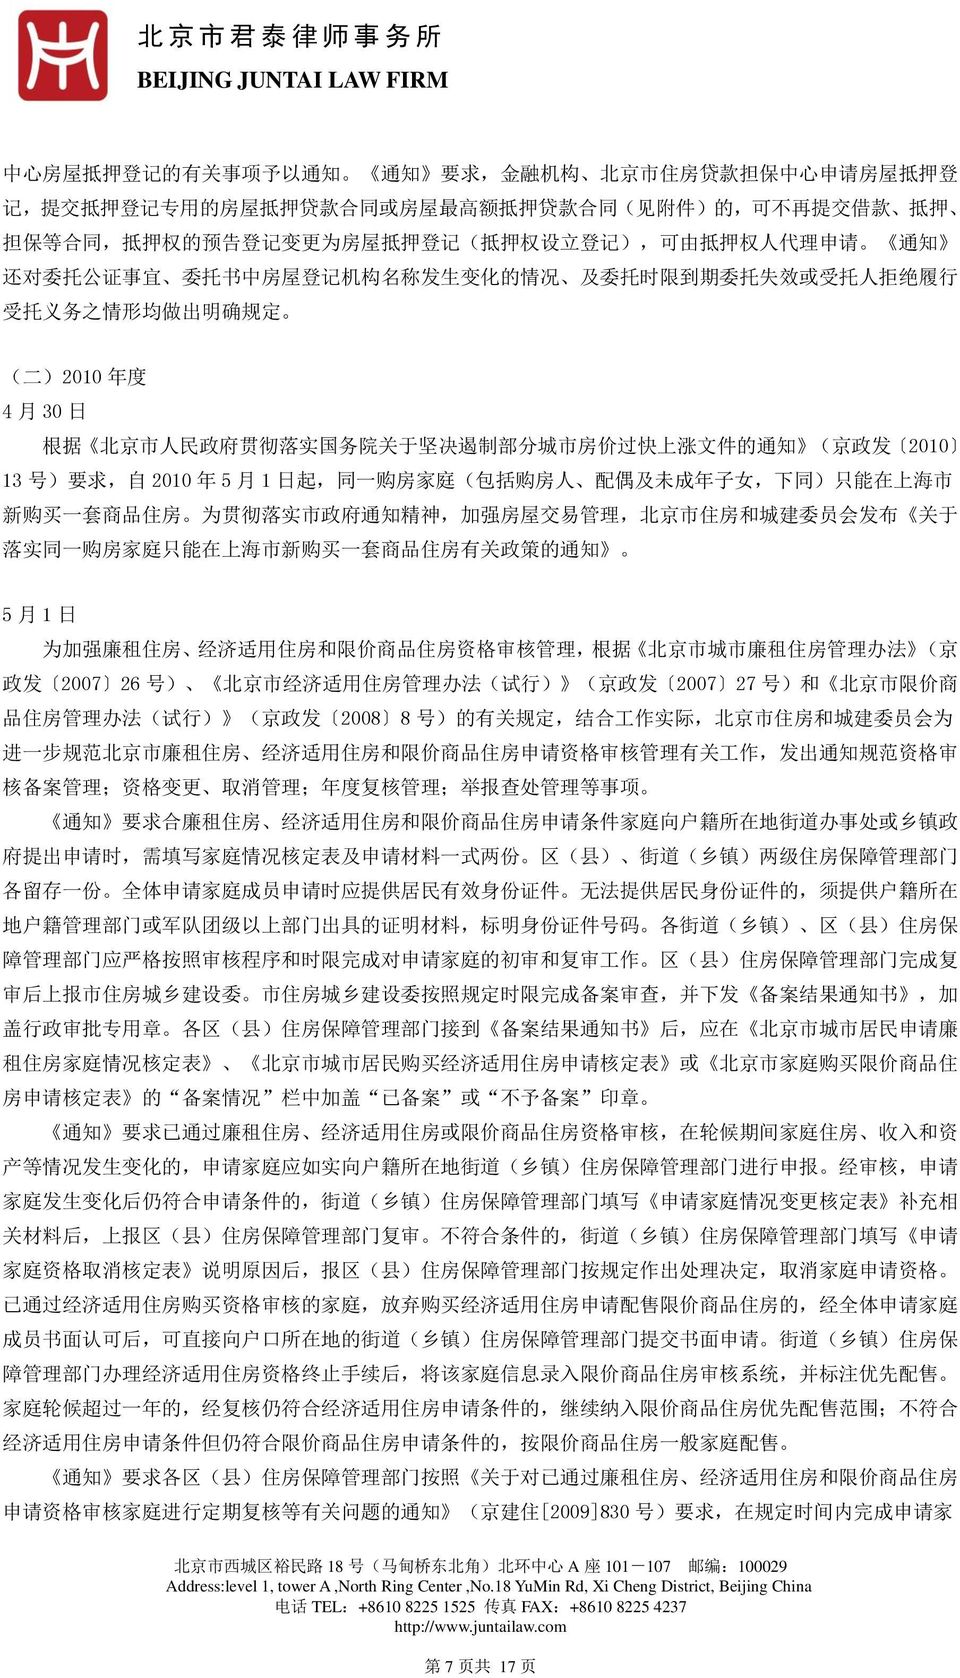 度 4 月 30 日 根 据 北 京 市 人 民 政 府 贯 彻 落 实 国 务 院 关 于 坚 决 遏 制 部 分 城 市 房 价 过 快 上 涨 文 件 的 通 知 ( 京 政 发 2010 13 号 ) 要 求, 自 2010 年 5 月 1 日 起, 同 一 购 房 家 庭 ( 包 括 购 房 人 配 偶 及 未 成 年 子 女, 下 同 ) 只 能 在 上 海 市 新 购 买 一 套